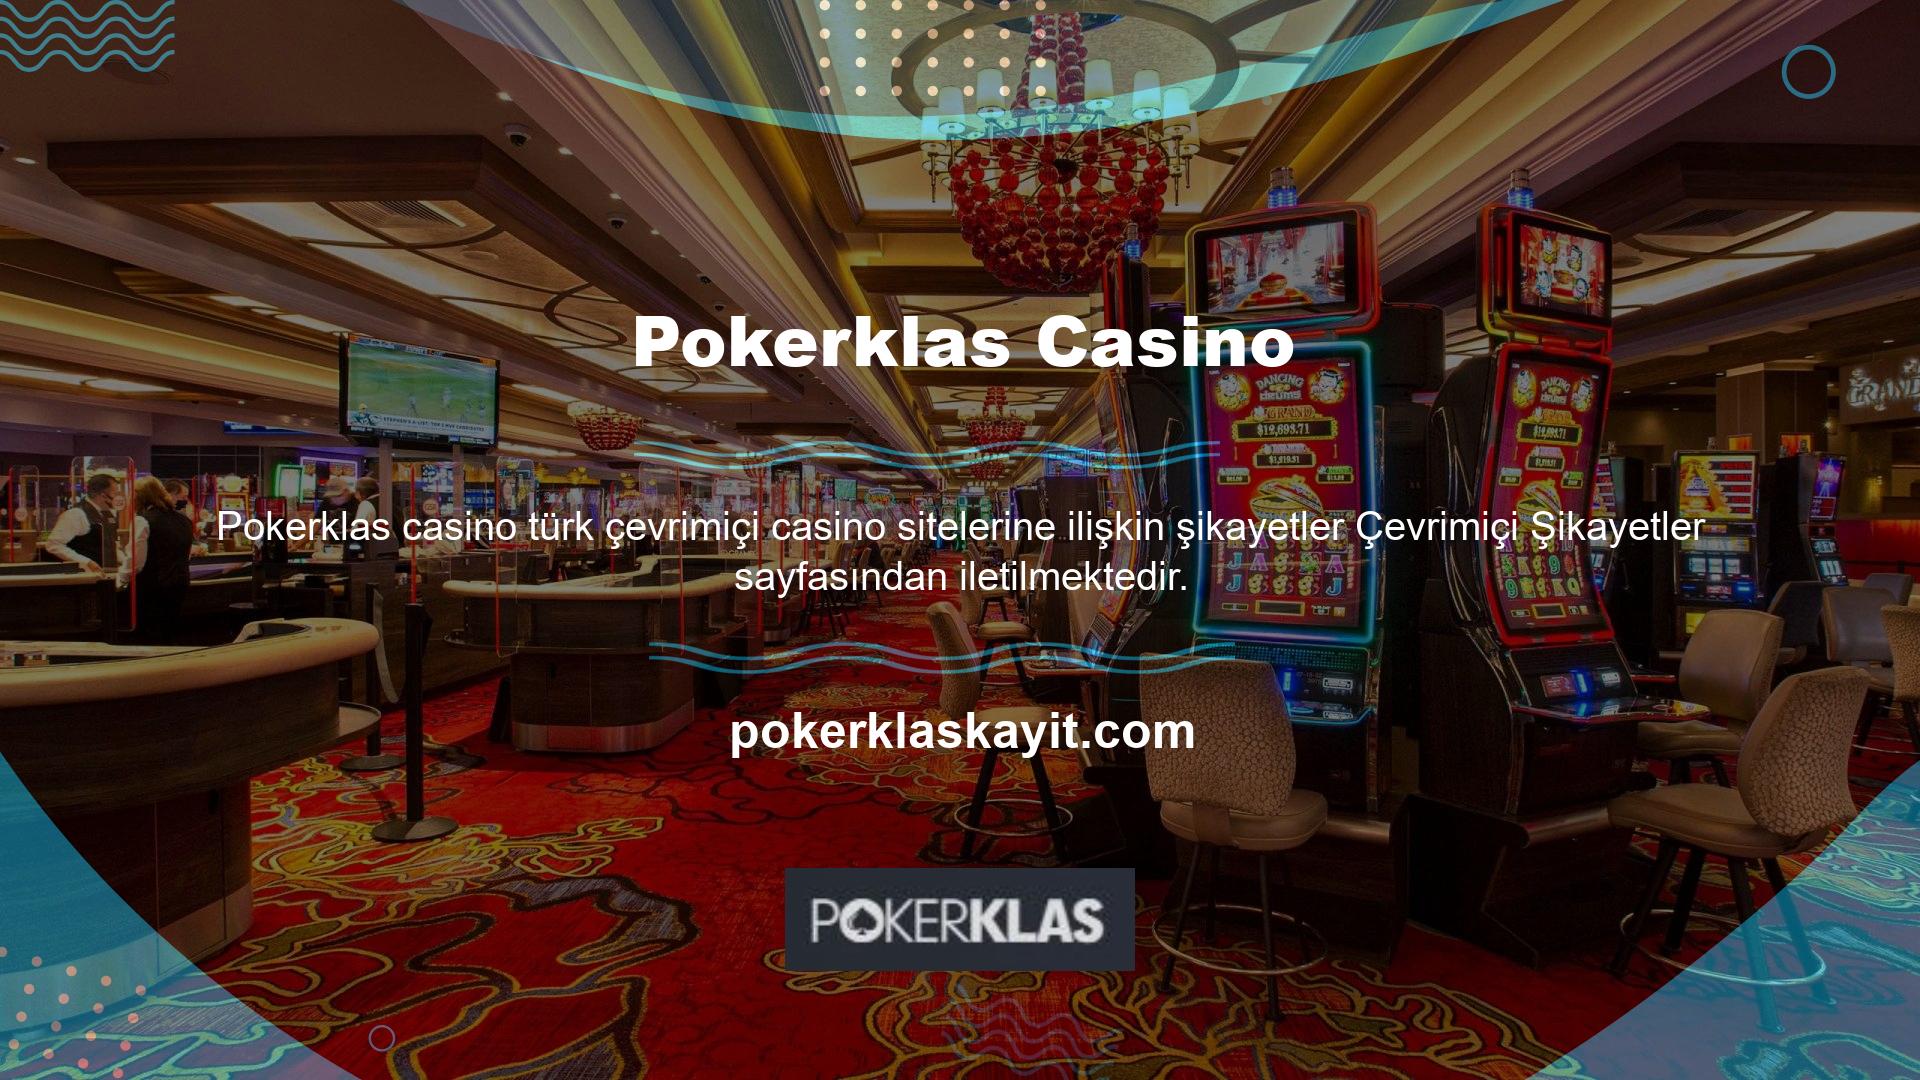 Bu siteleri incelerseniz Pokerklas ile ilgili kesinlikle herhangi bir şikayetin olmadığını göreceksiniz